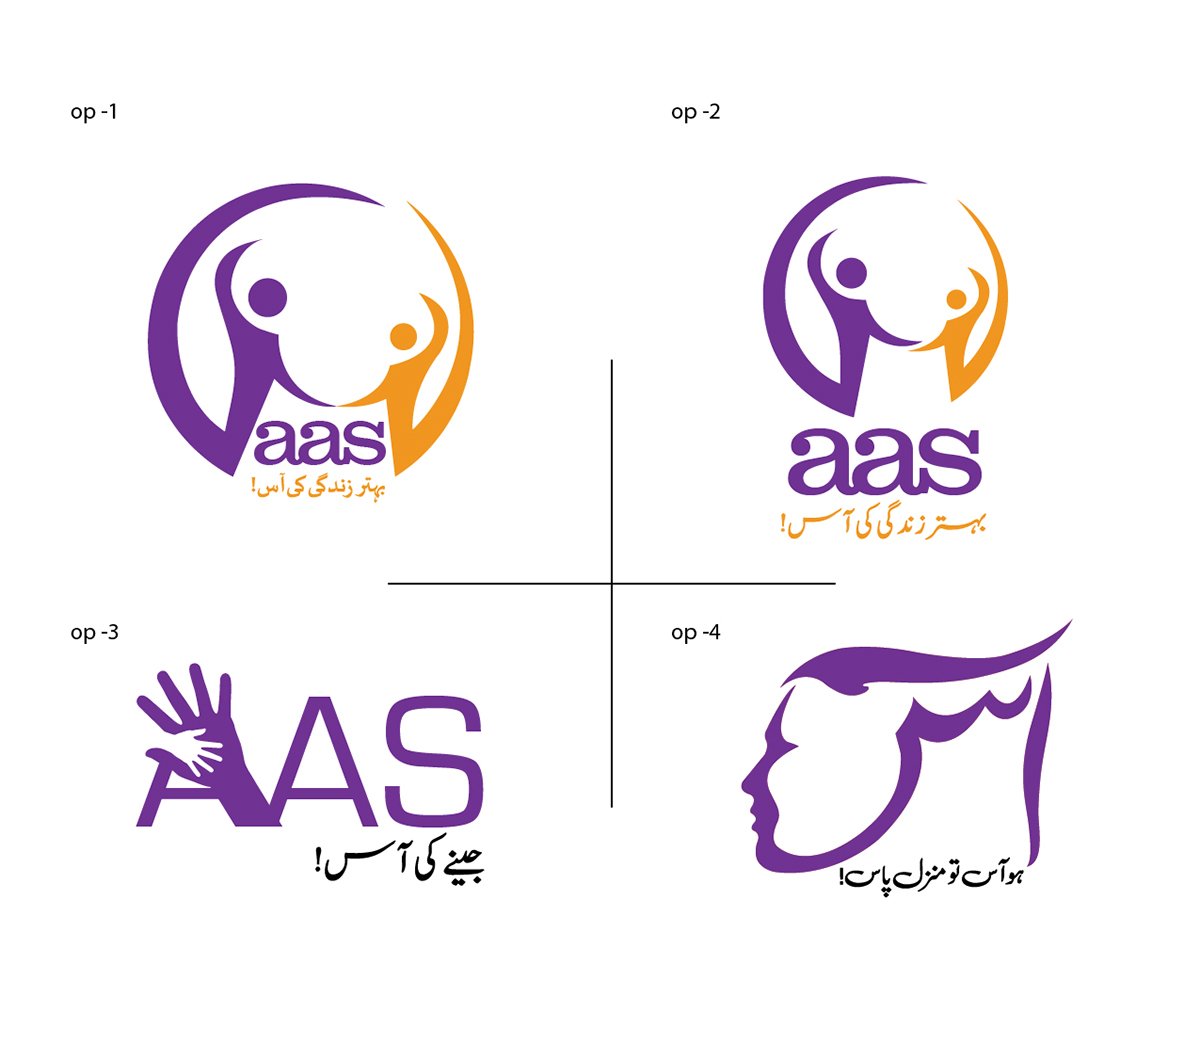 NGO aas CreativeDirection ArtDirection urdu urducalligraphy logo Advertising 